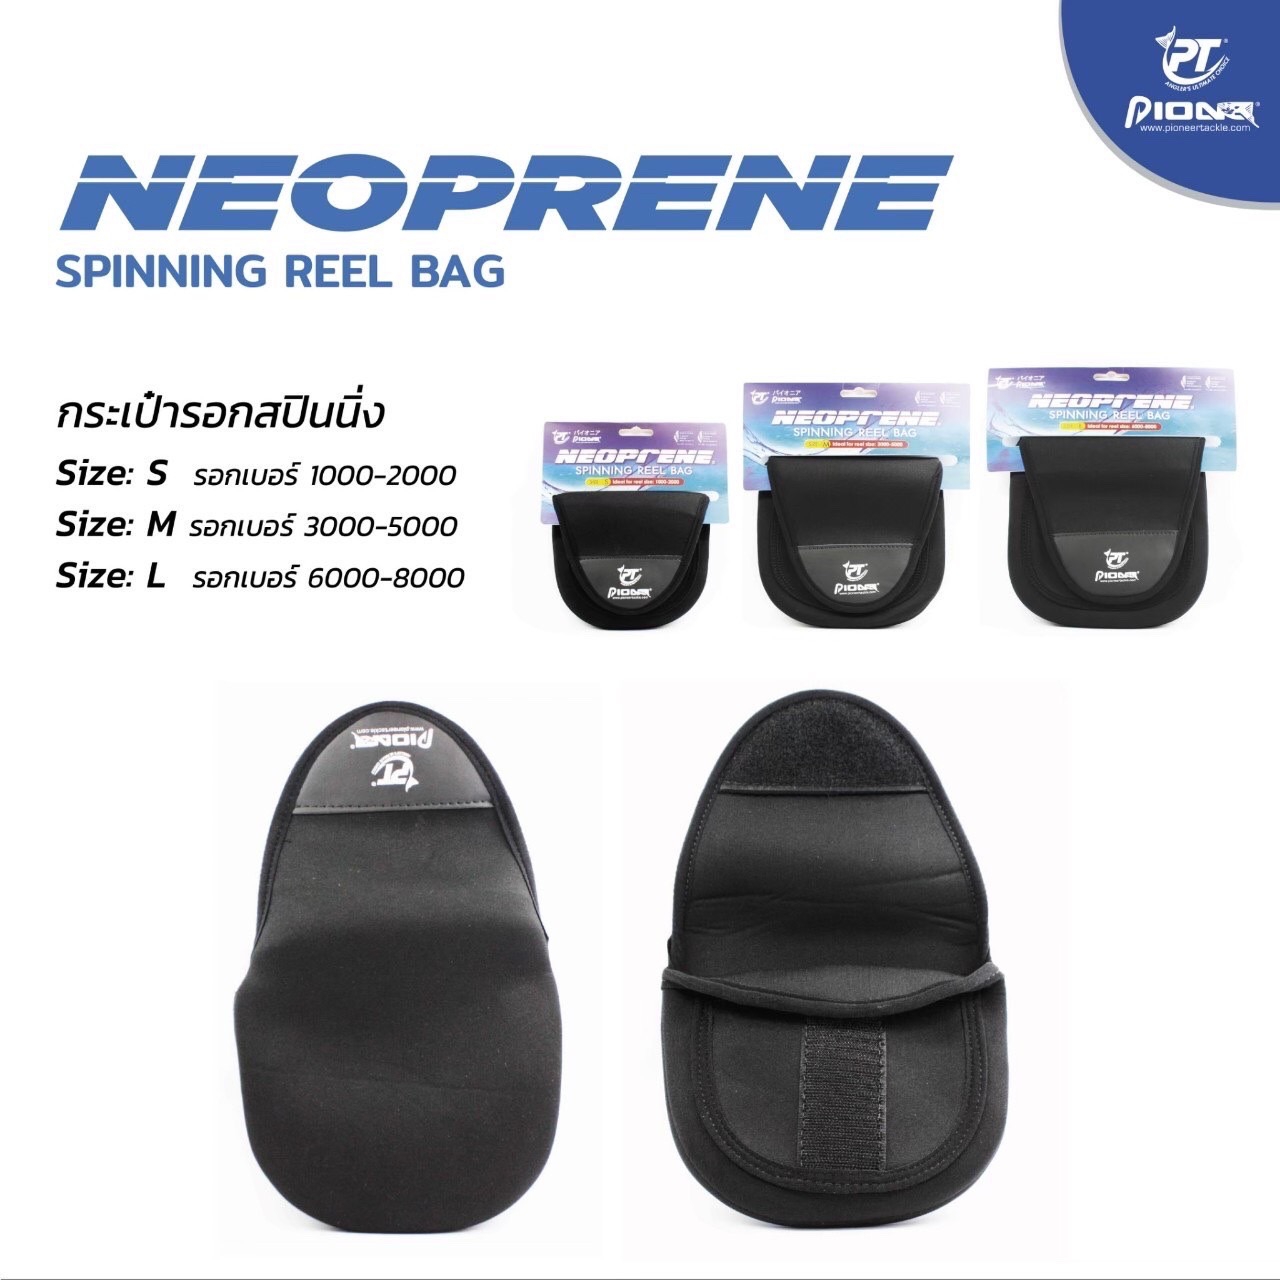 Pioneer Neoprene Spinning Reel Bag #L*ถุงรอก - 7 SEAS PROSHOP